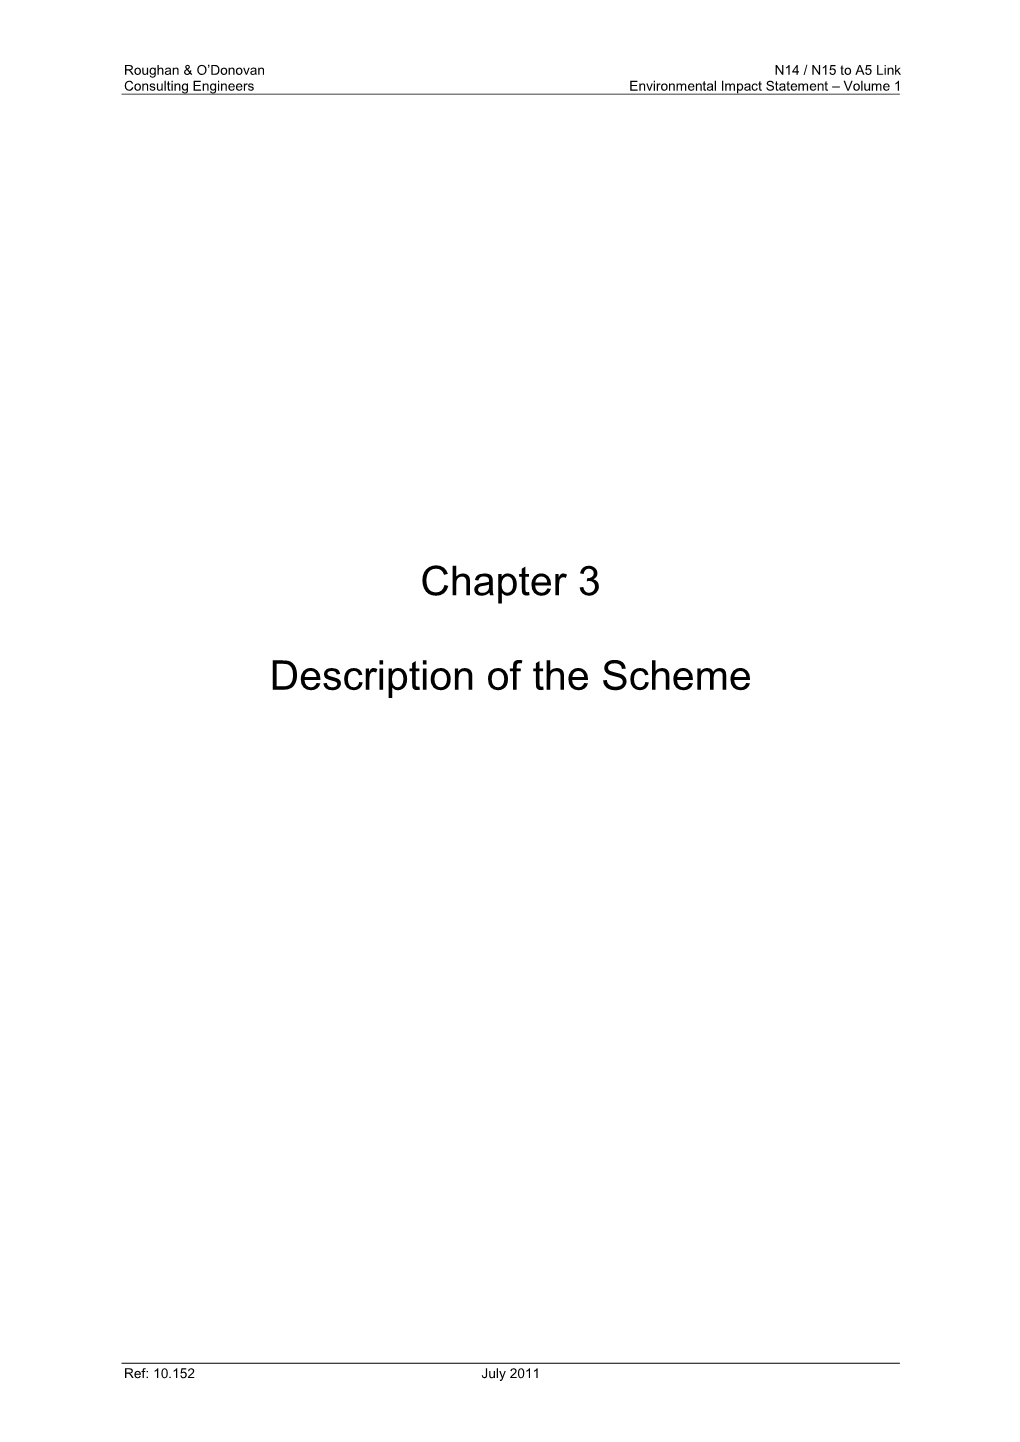 Chapter 3 Description of the Scheme